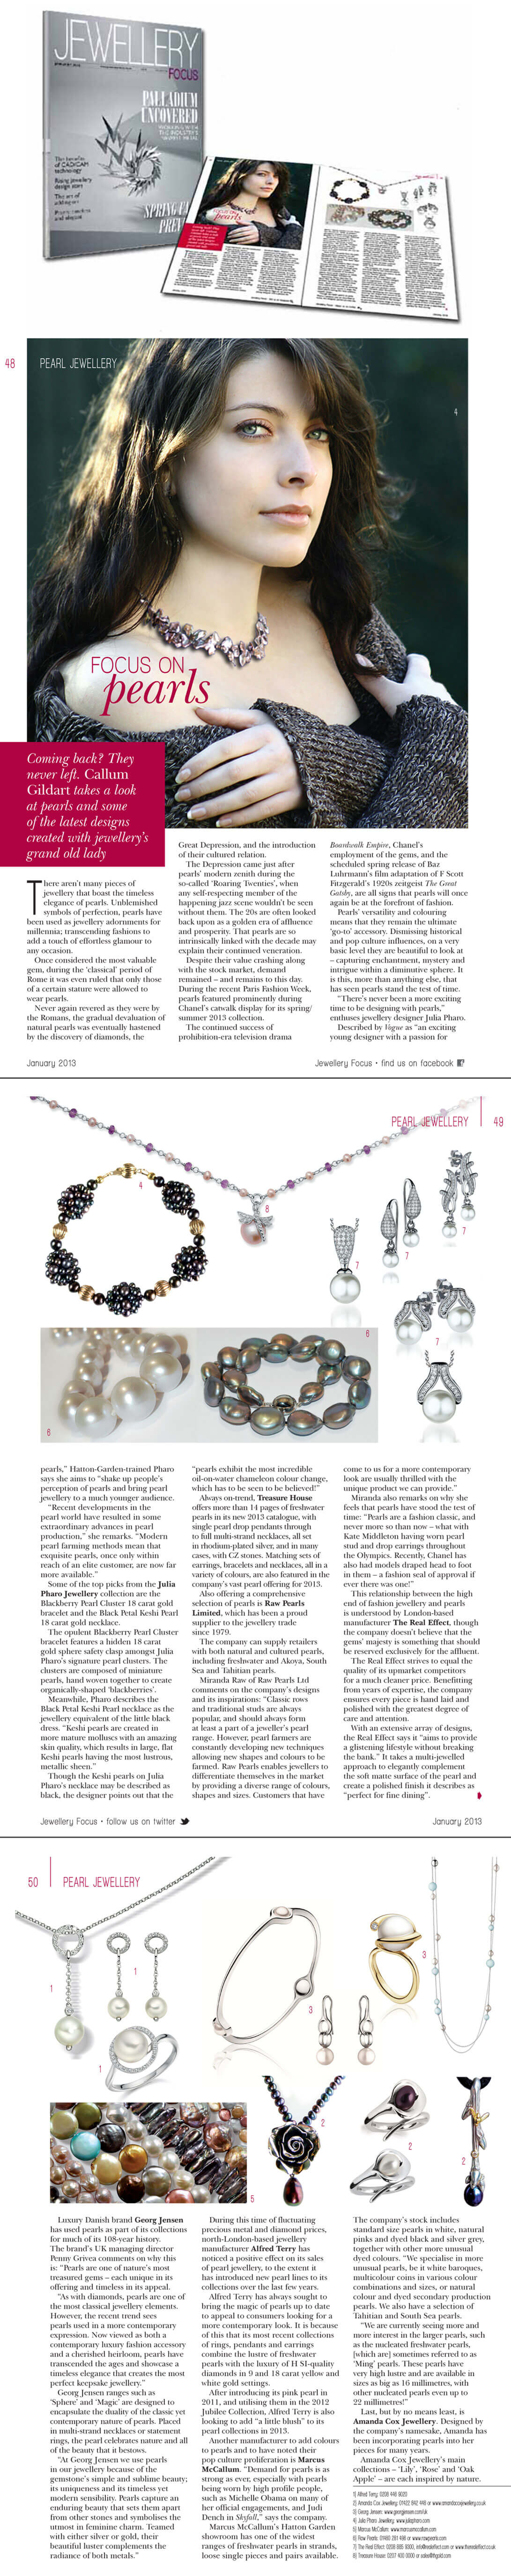 jewellery focus magazine